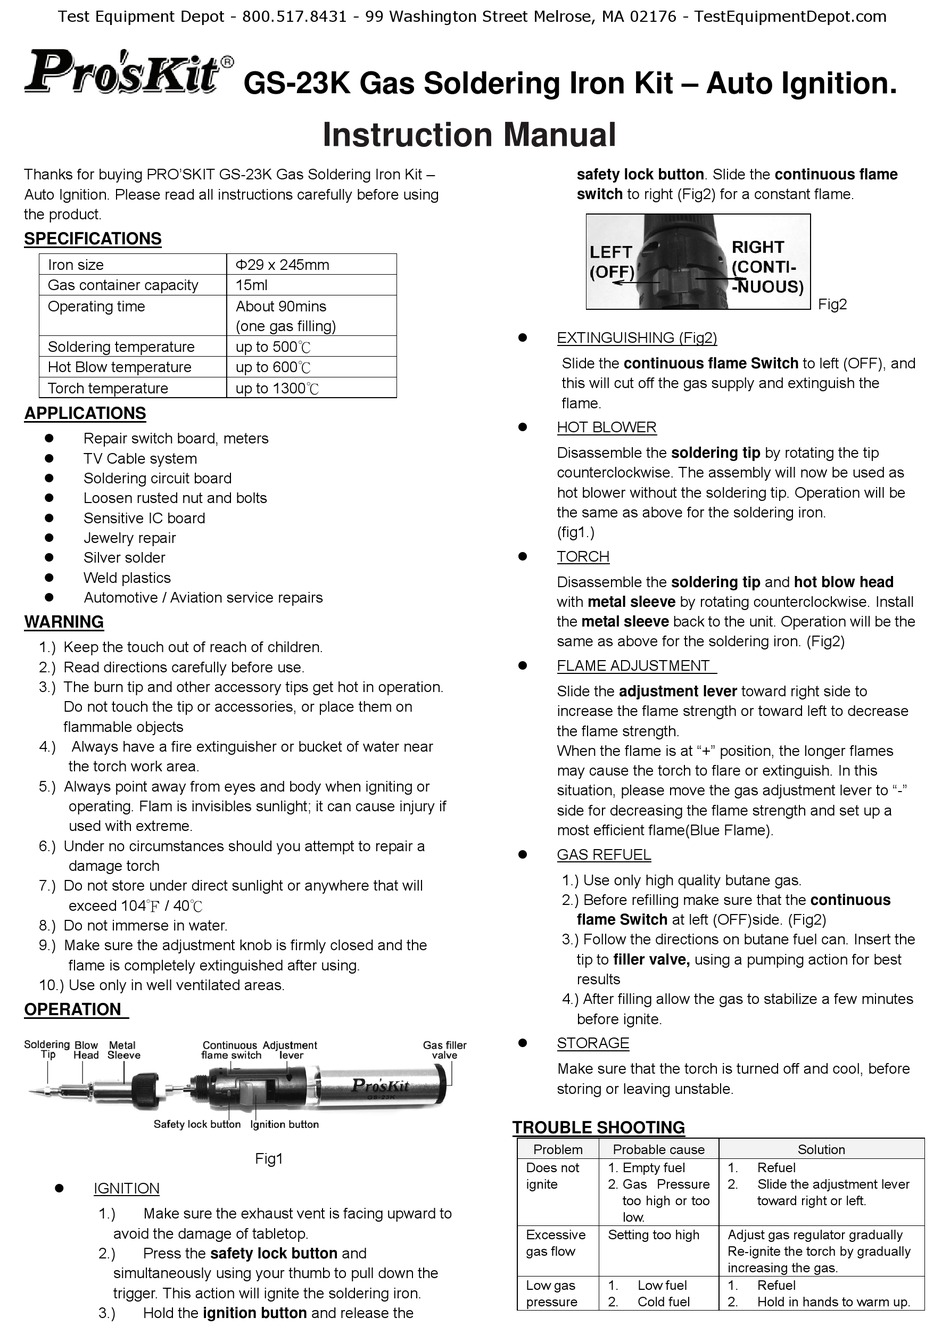 PROS'KIT GS-23K INSTRUCTION MANUAL Pdf Download | ManualsLib